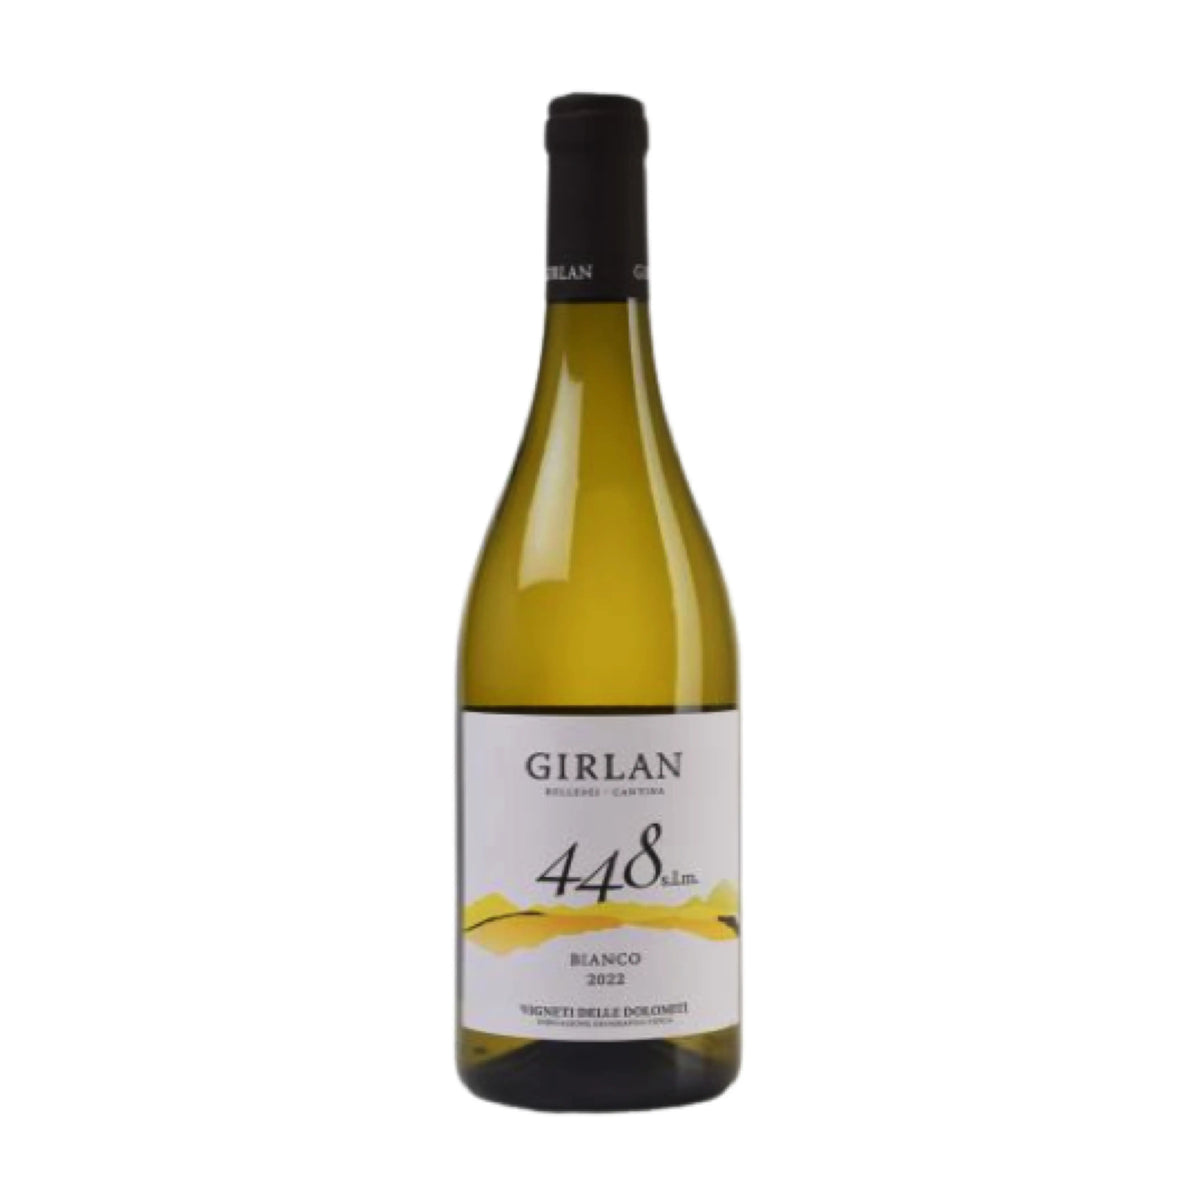 Kellerei Girlan-Weißwein-Weißburgunder, Chardonnay, Sauvignon-2022 Cuvée Weiss 448 Vignete delle Dolomiti-WINECOM